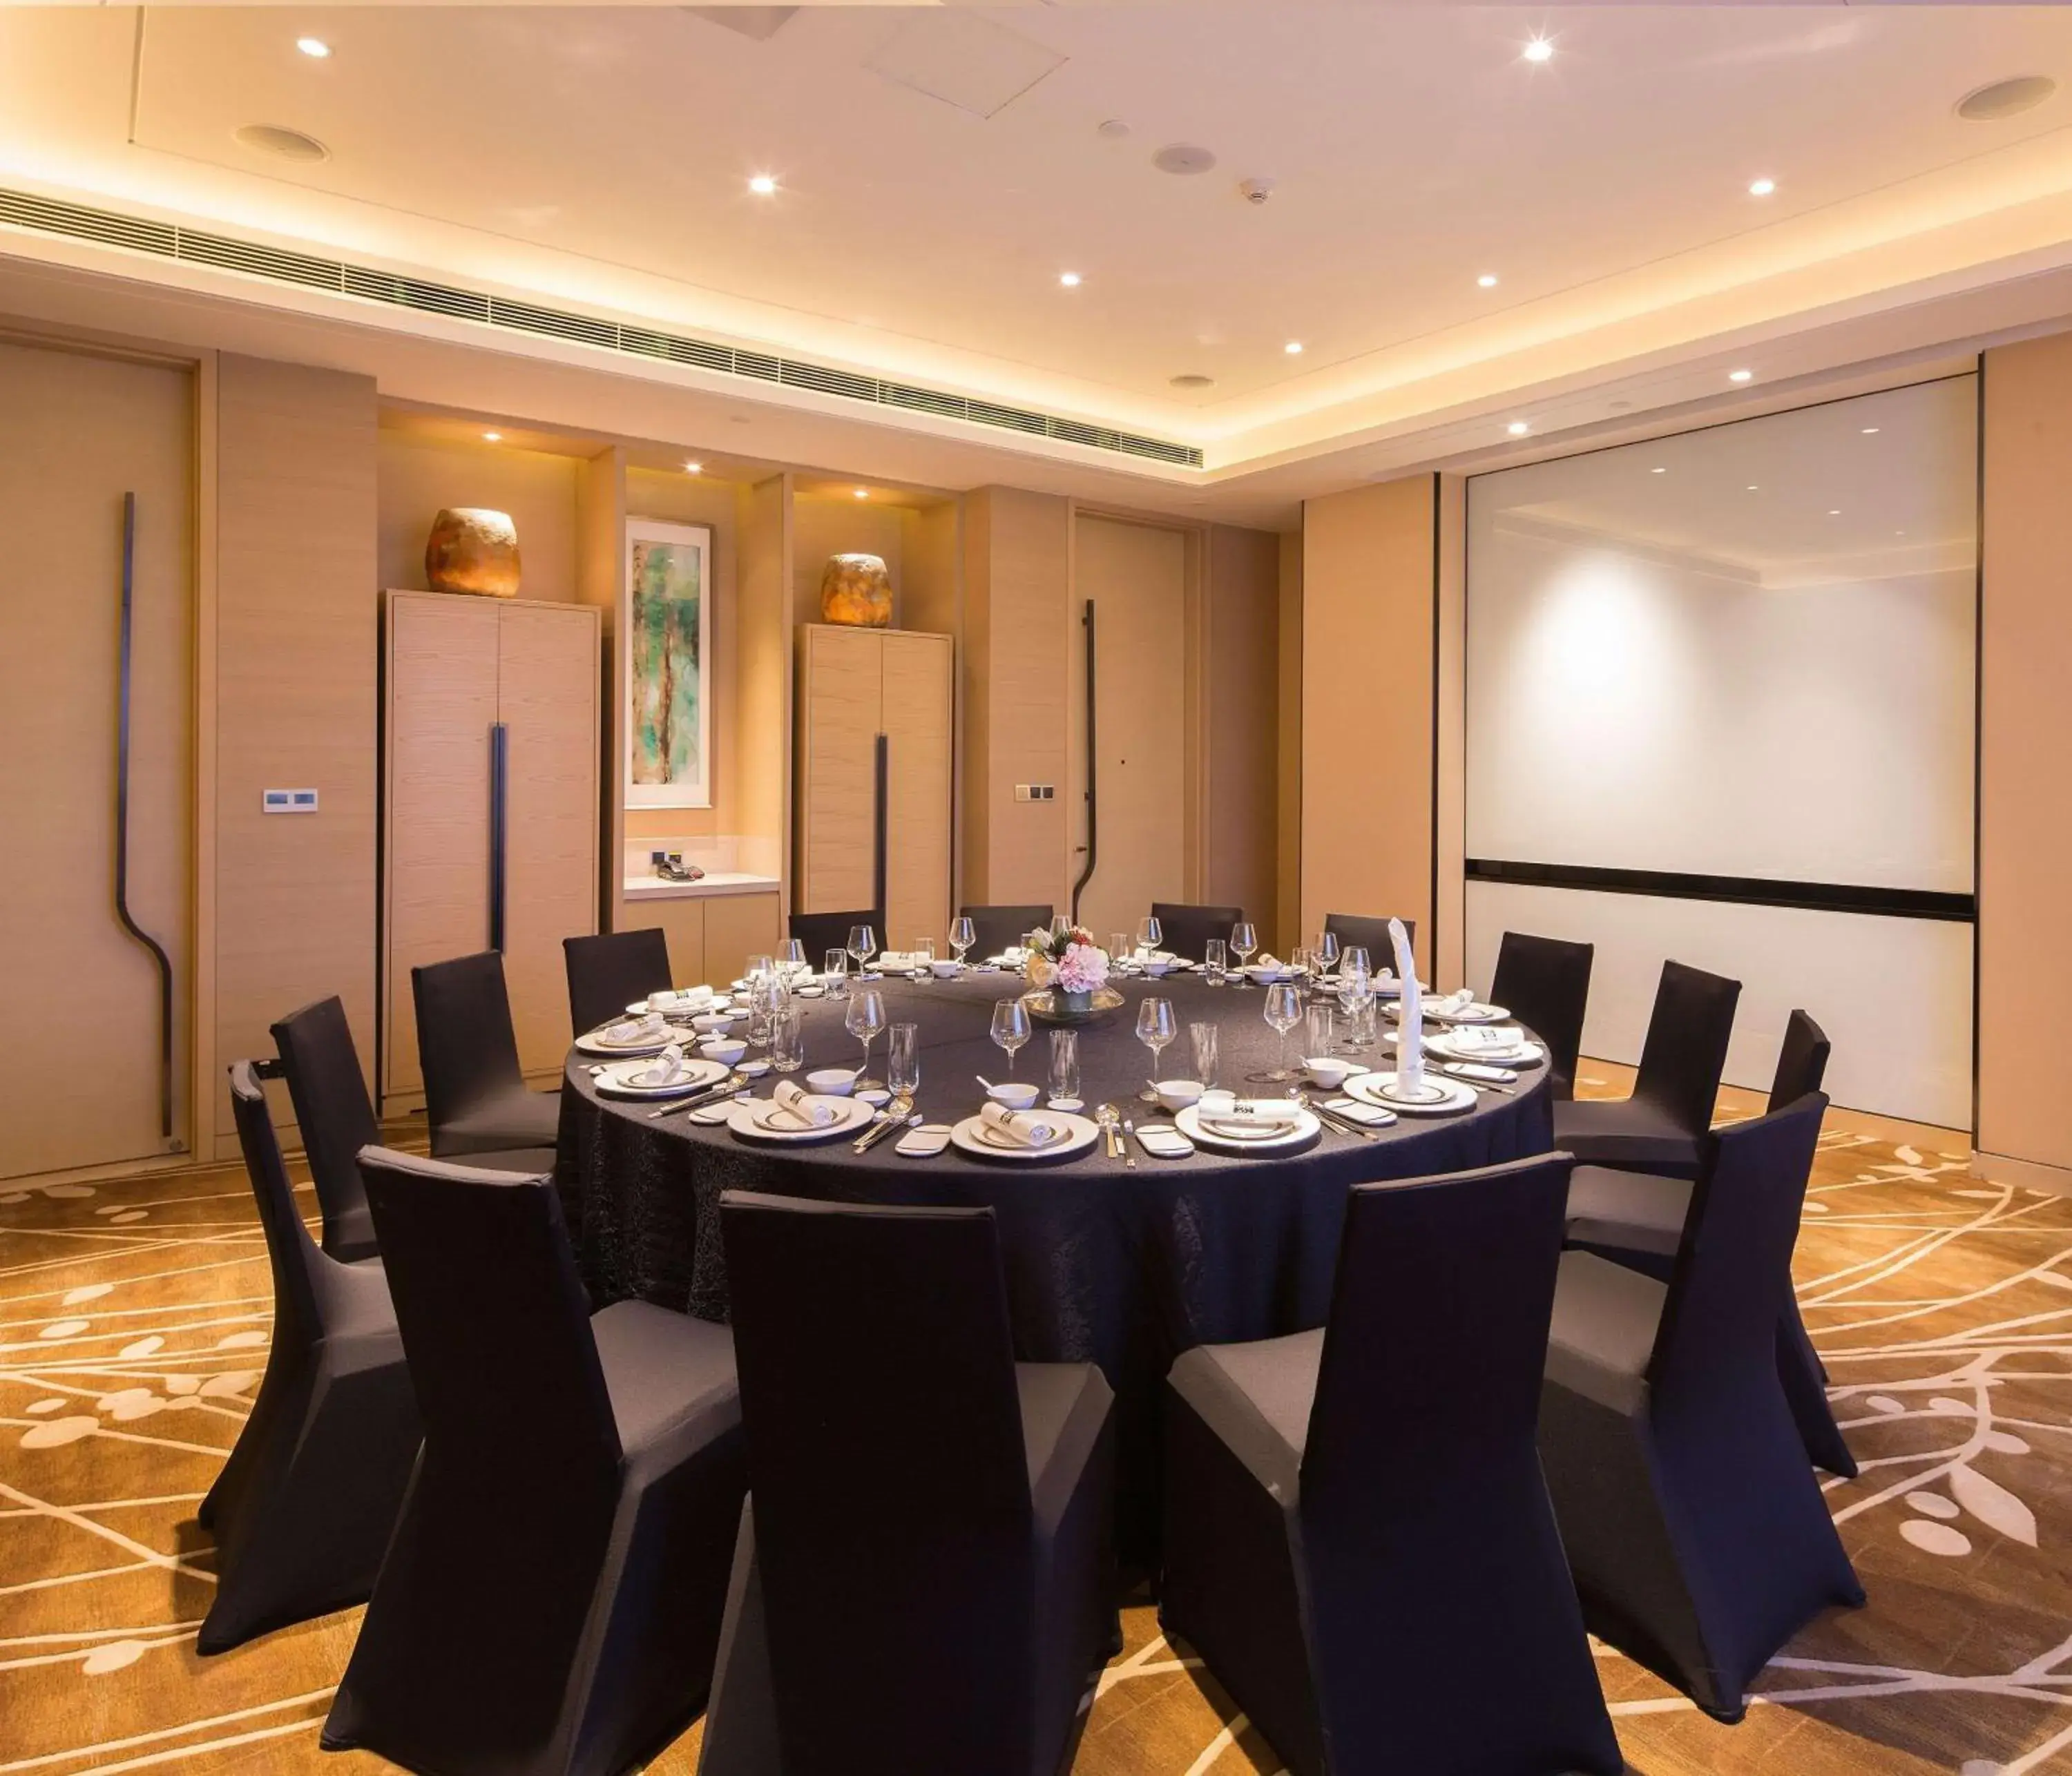 Dining area, Banquet Facilities in Hilton Garden Inn Xi'an High-Tech Zone